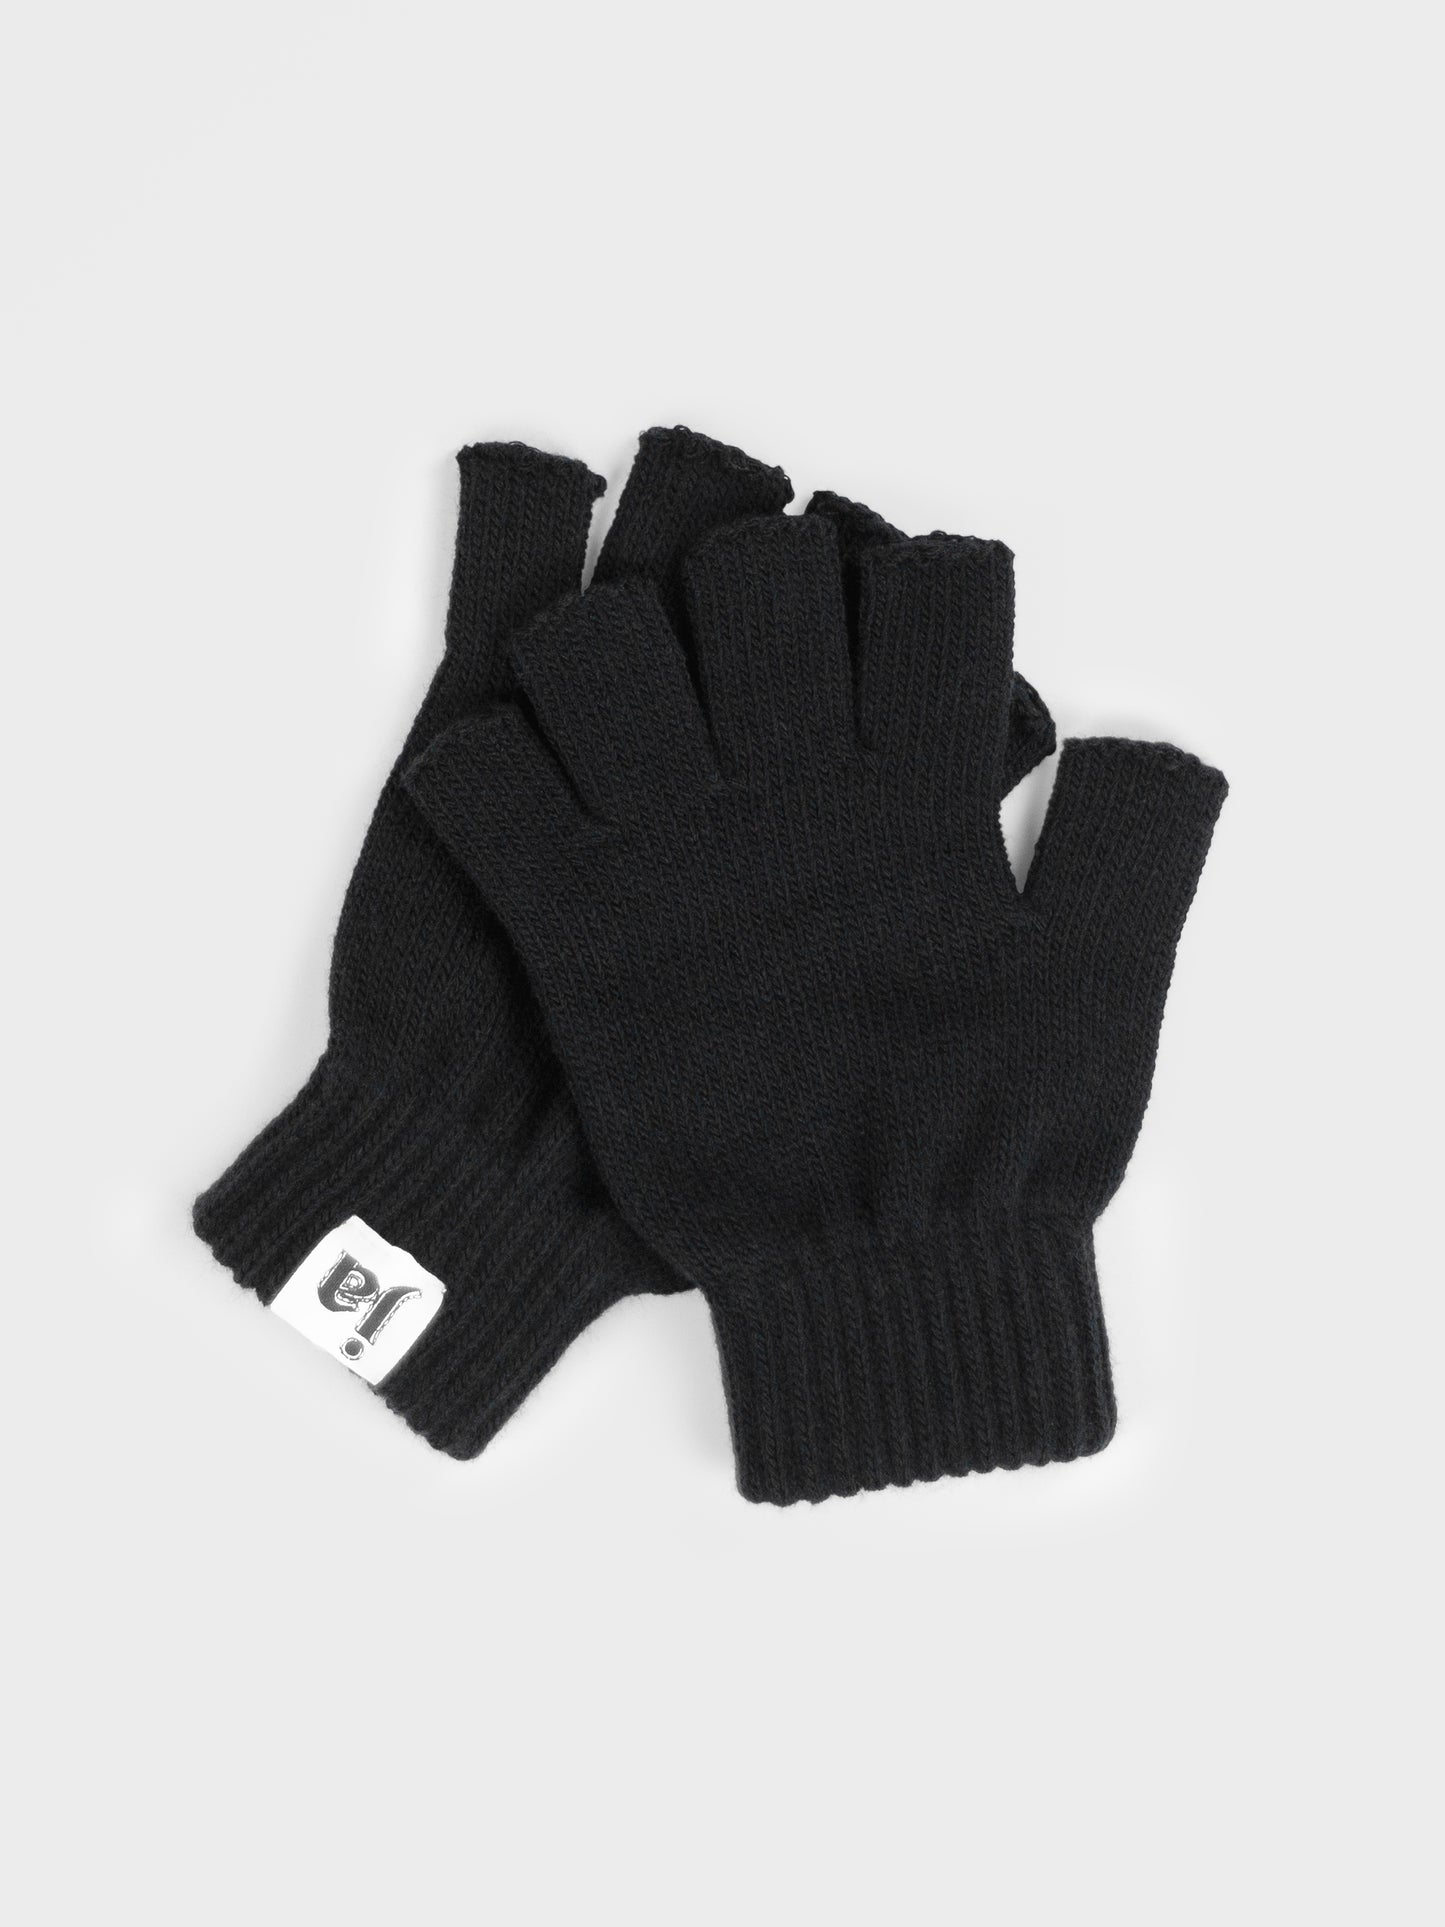 Handschuhe: ja - nurcool